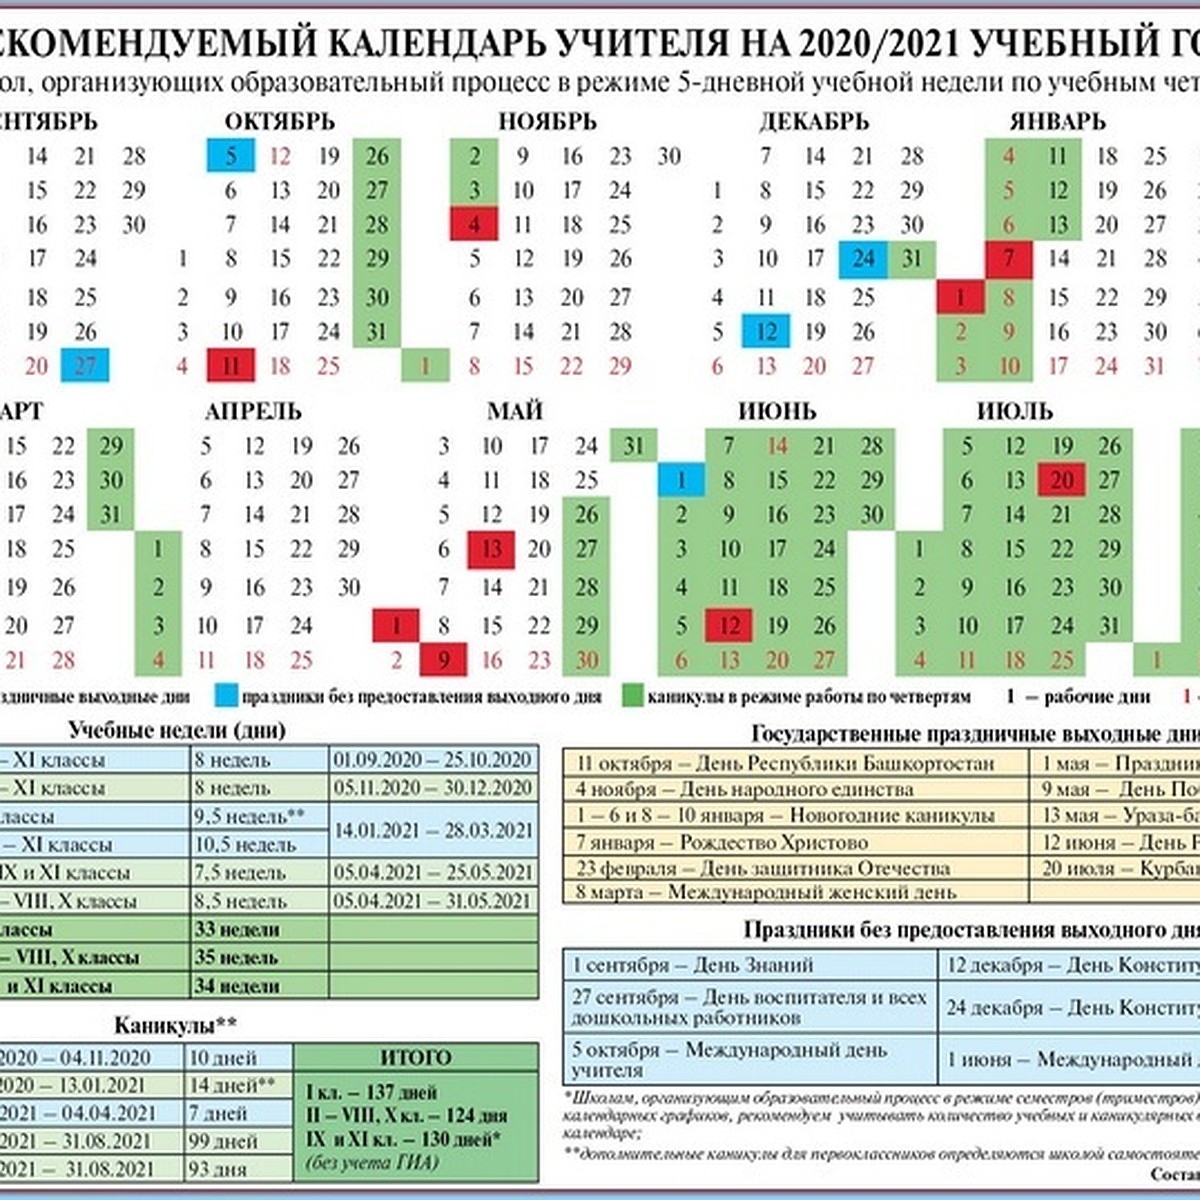 В Башкирии опубликован календарь учителя на 2020-21 учебный год - KP.RU